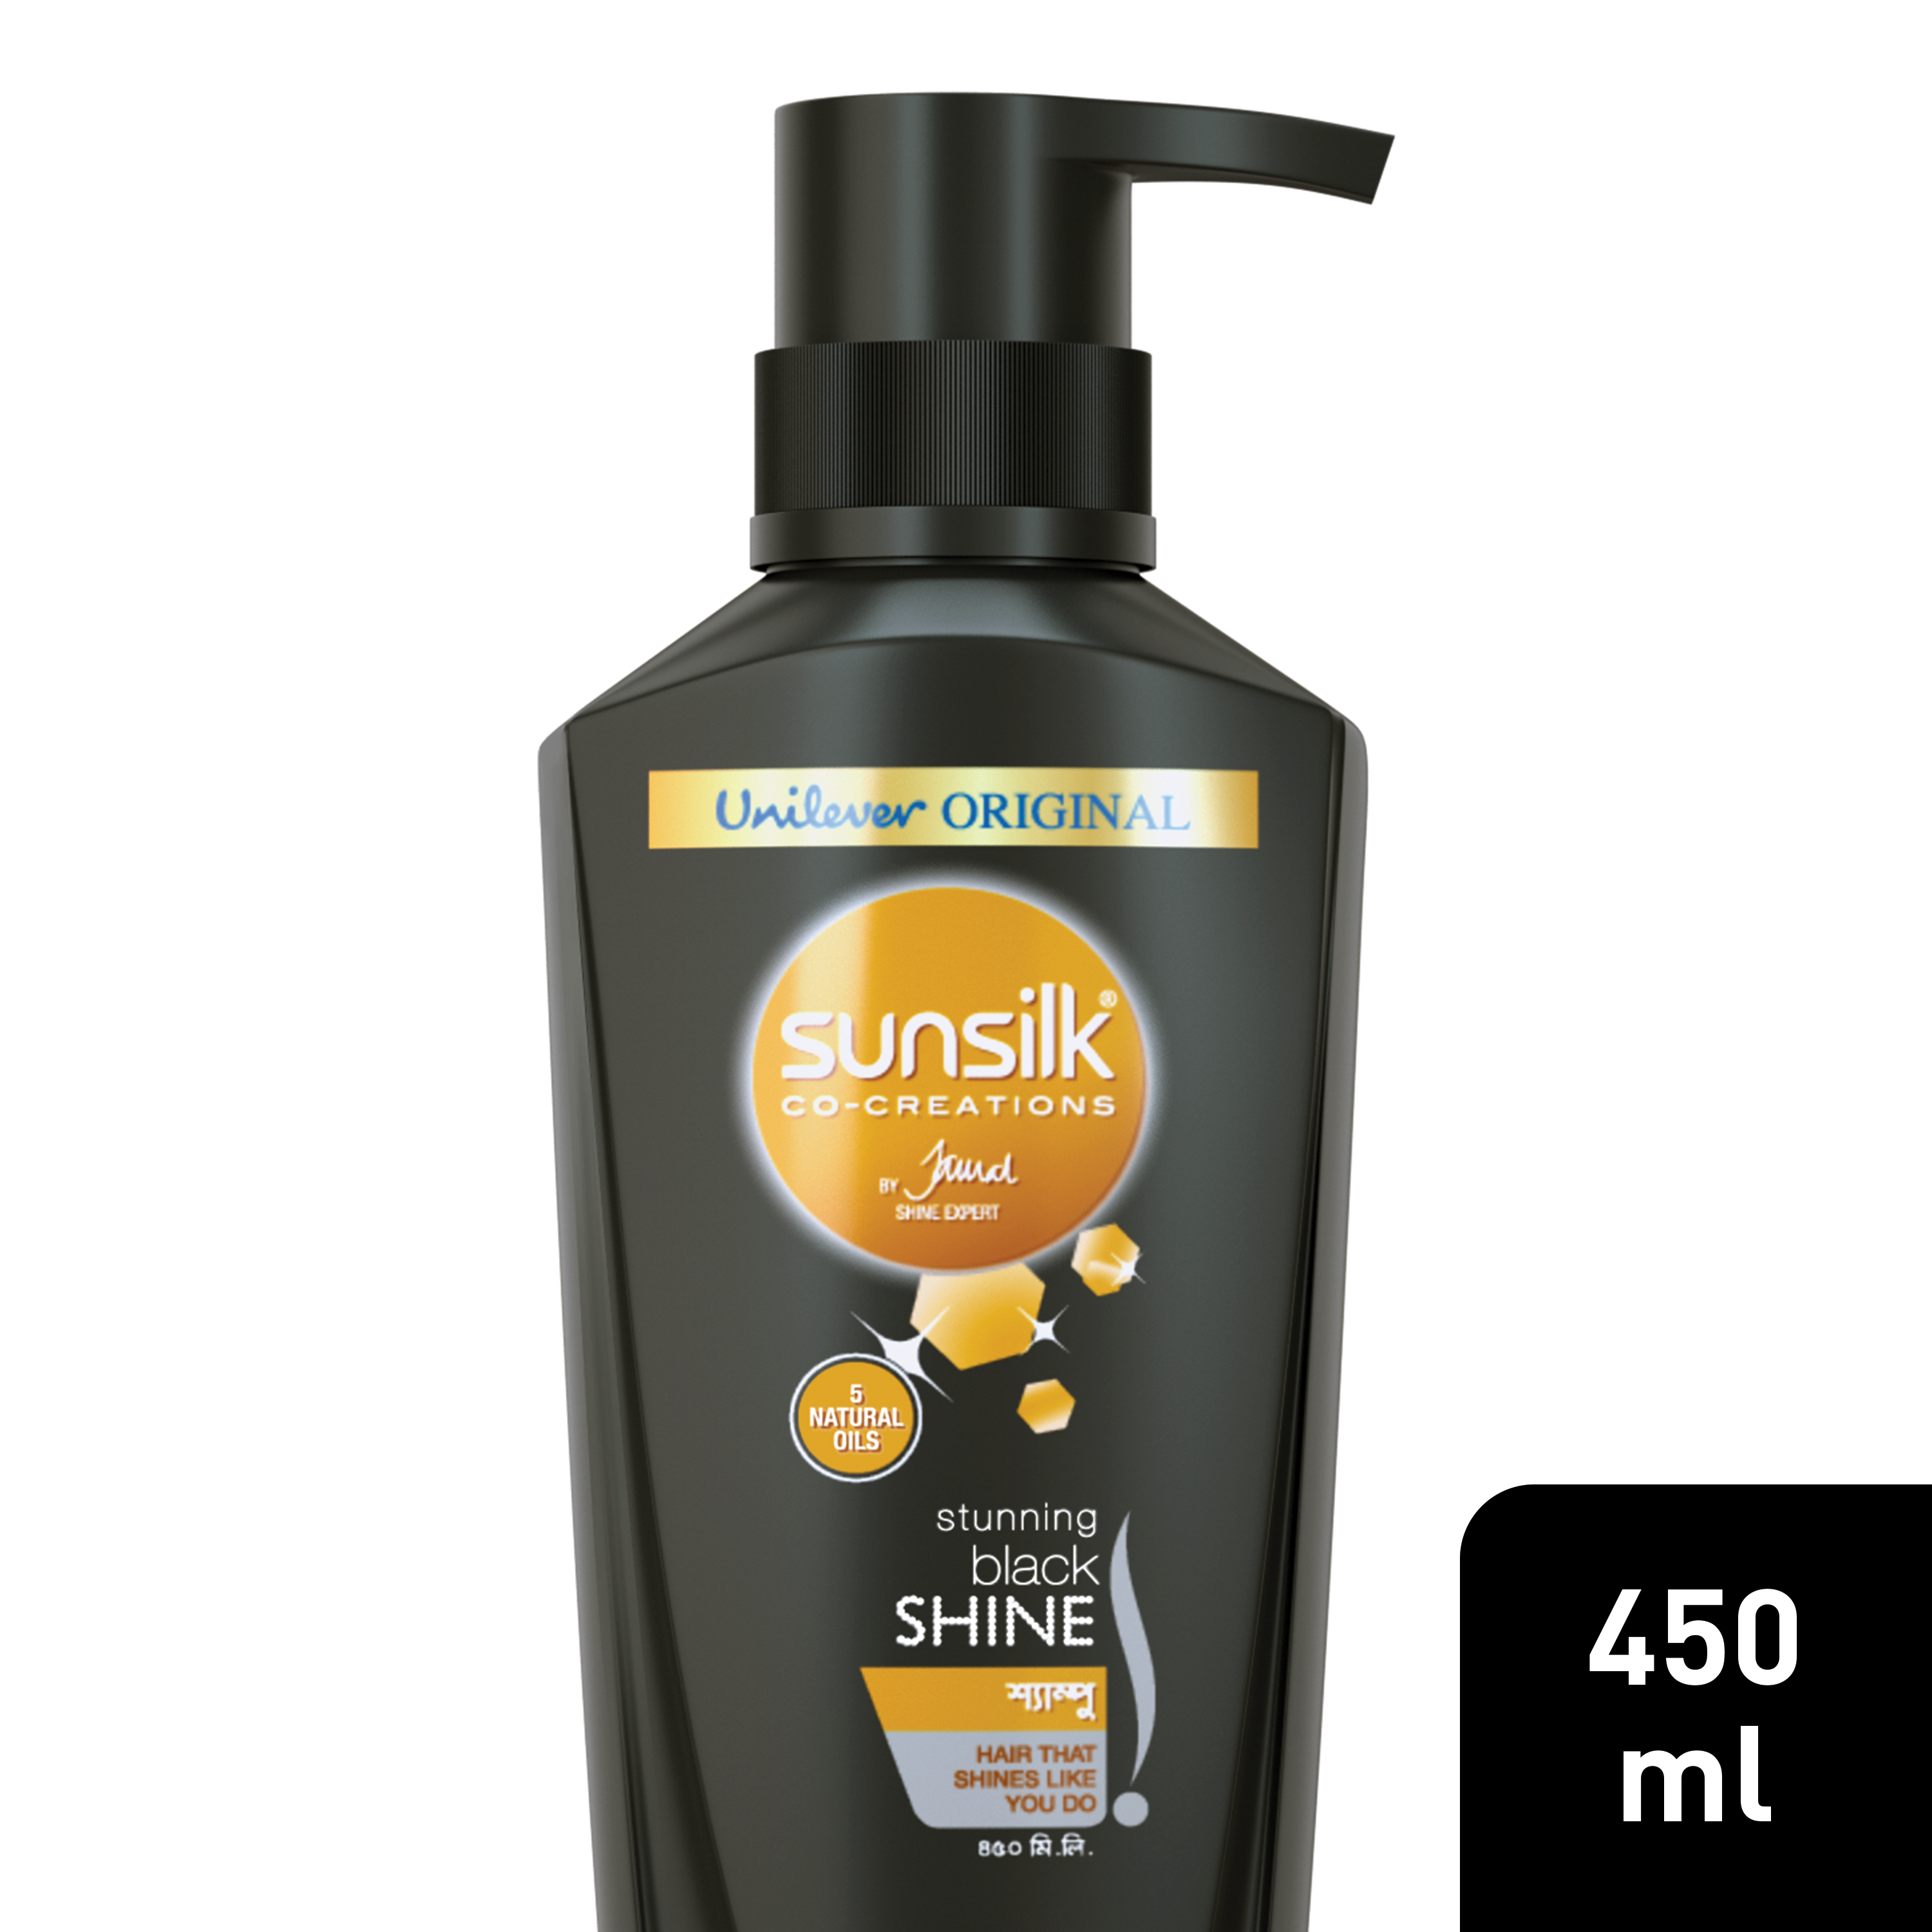 Sunsilk Stunning Black Shine Shampoo, 650ml Brazil